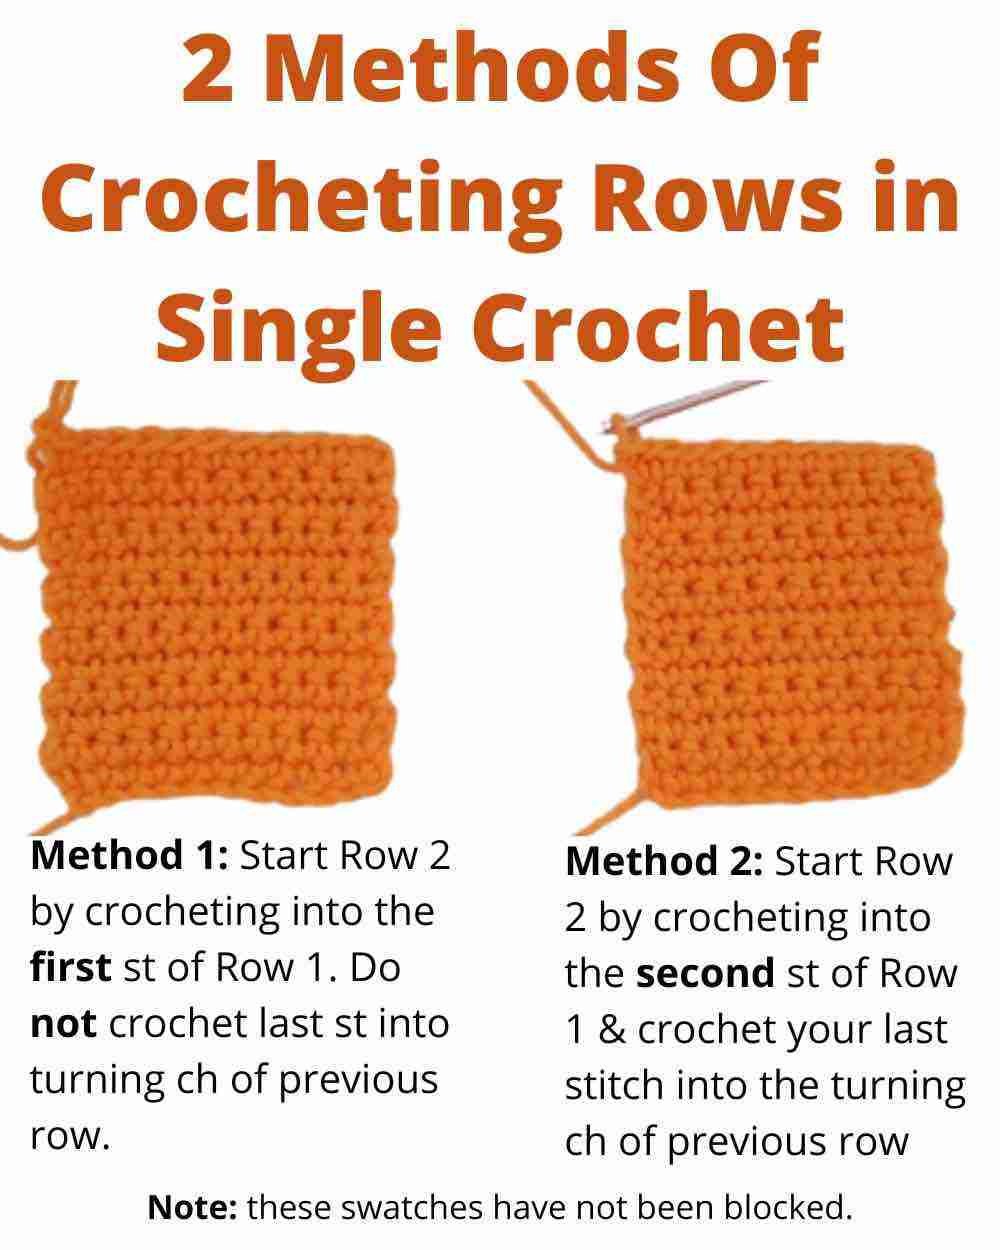 Crocheting Rows in Single Crochet